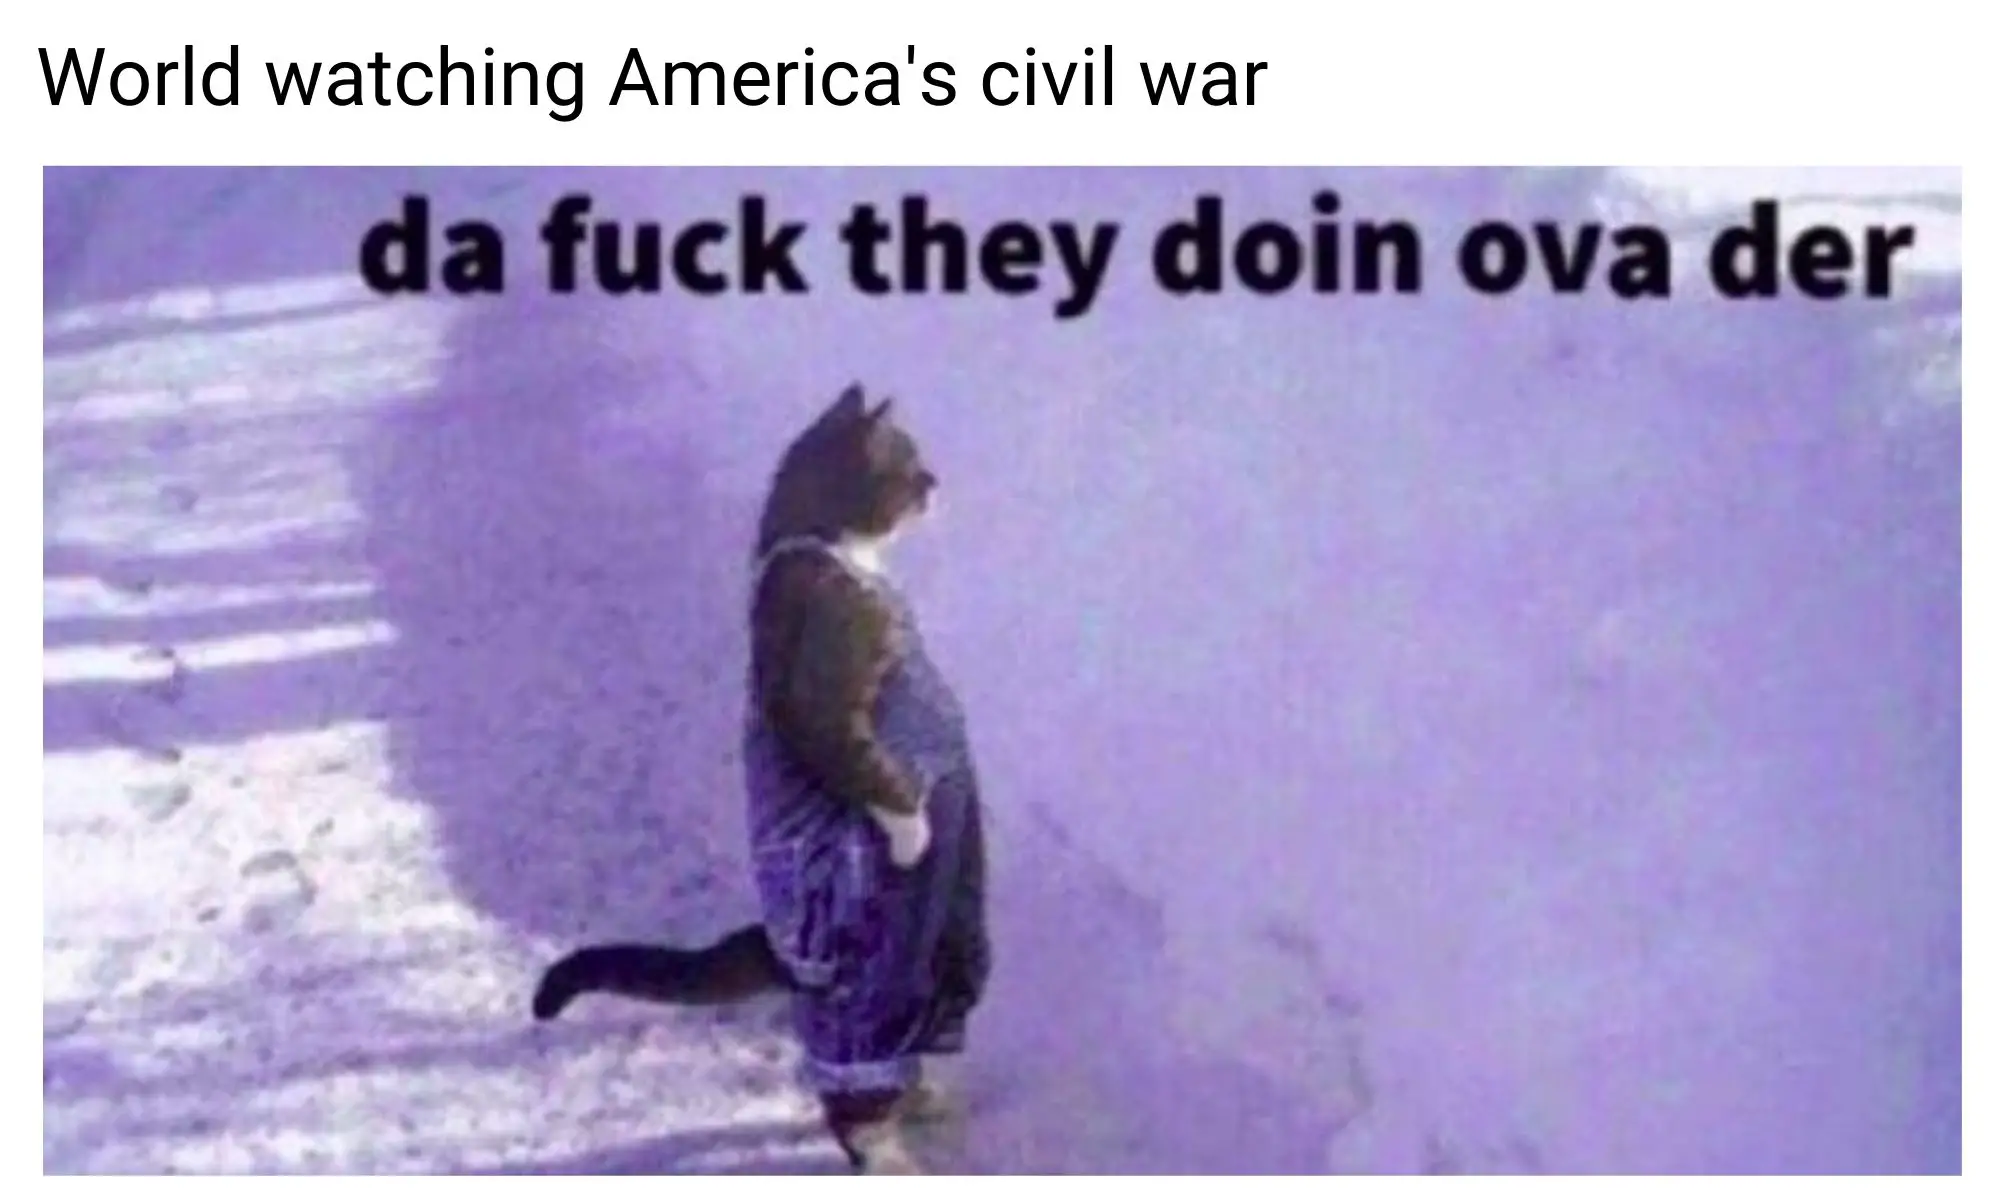 Civil war meme on US riots